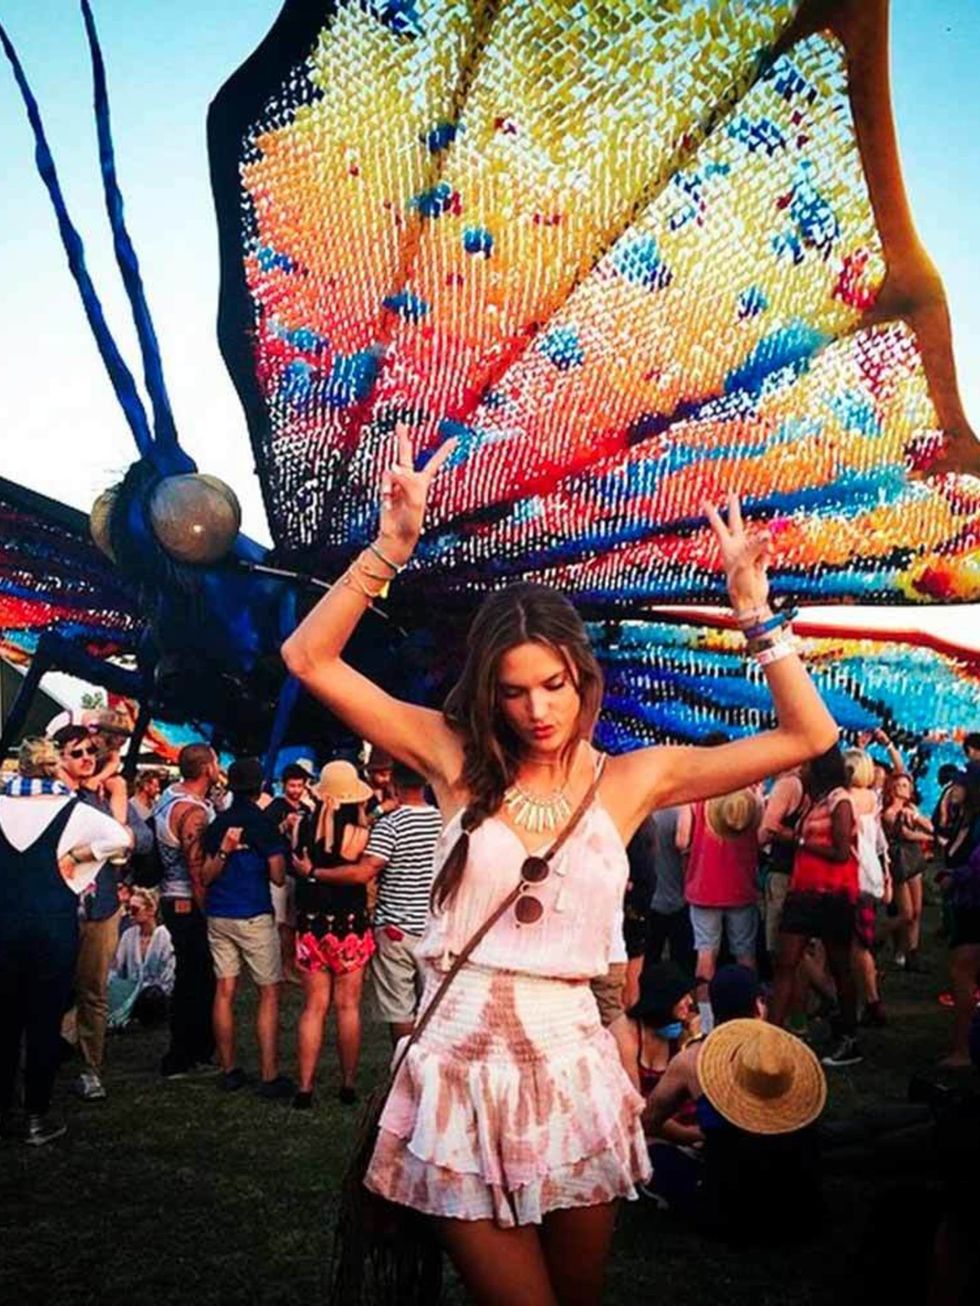 Alessandra Ambrosio (@alessandraambrosio) 

A butterfly on my shoulder #Coachella #foreveronvacation